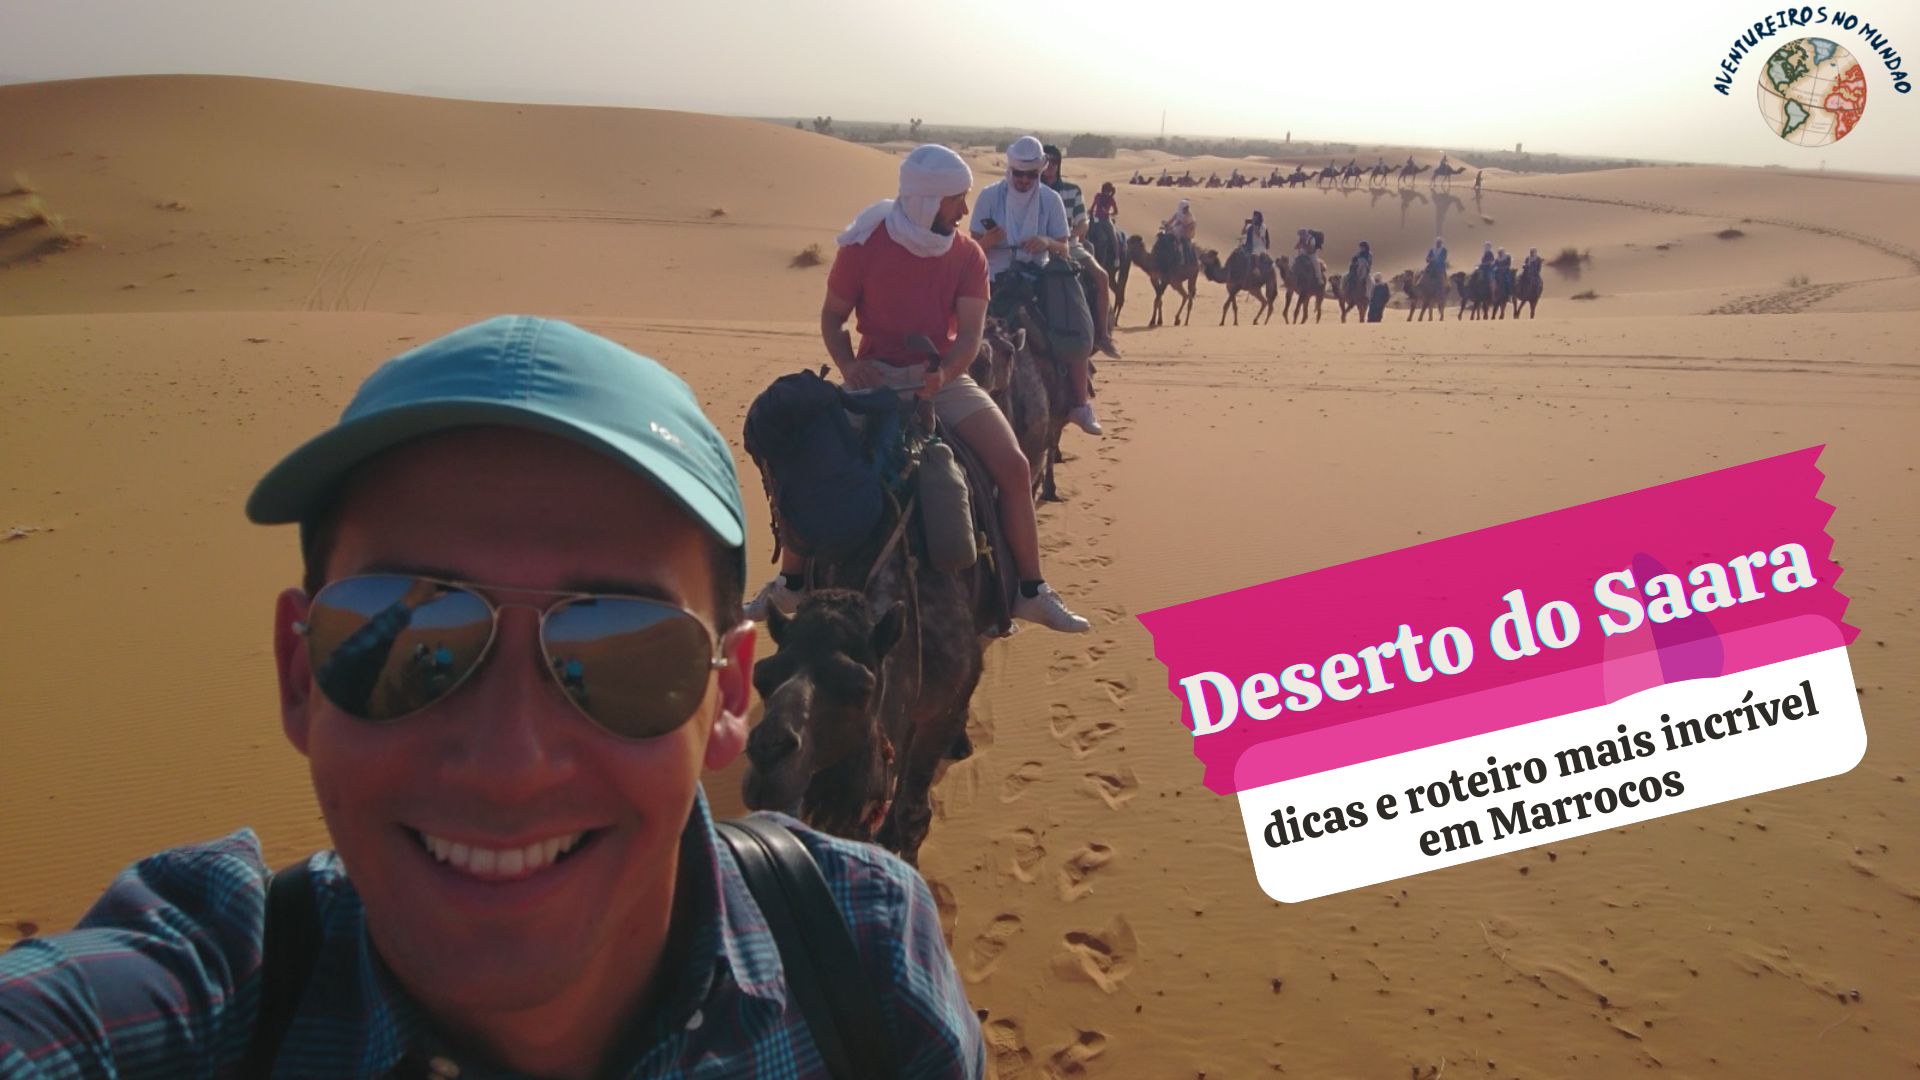 Deserto do Saara: dicas e roteiro mais incrível em Marrocos